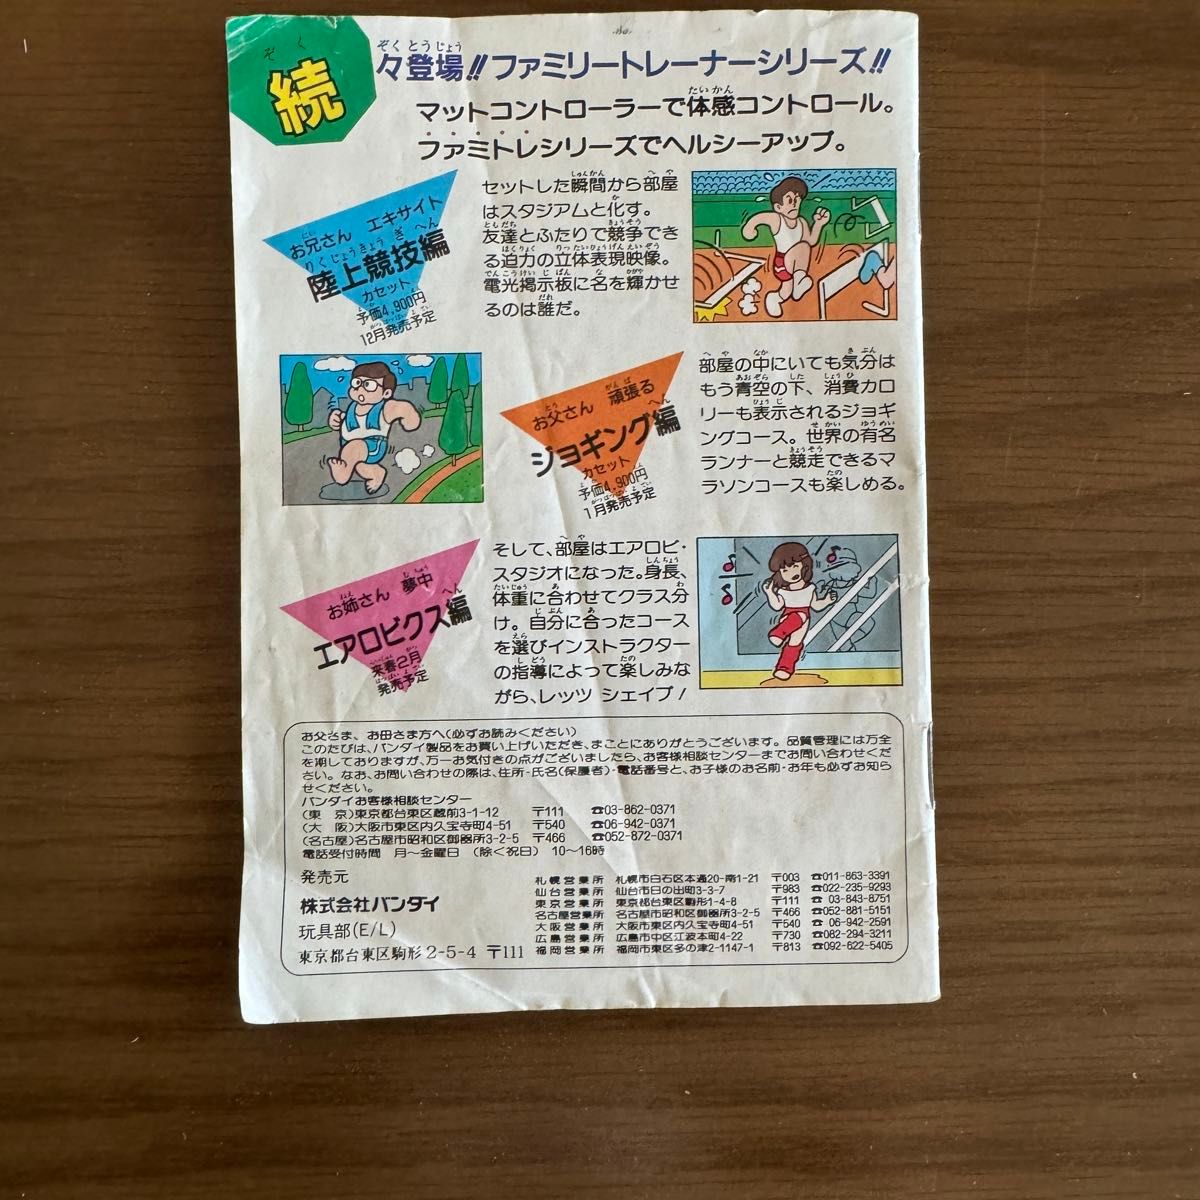 【箱・取説付き】ファミコン カセット アスレチックワールド ファミリートレーナーシリーズ FC ソフト BANDAI